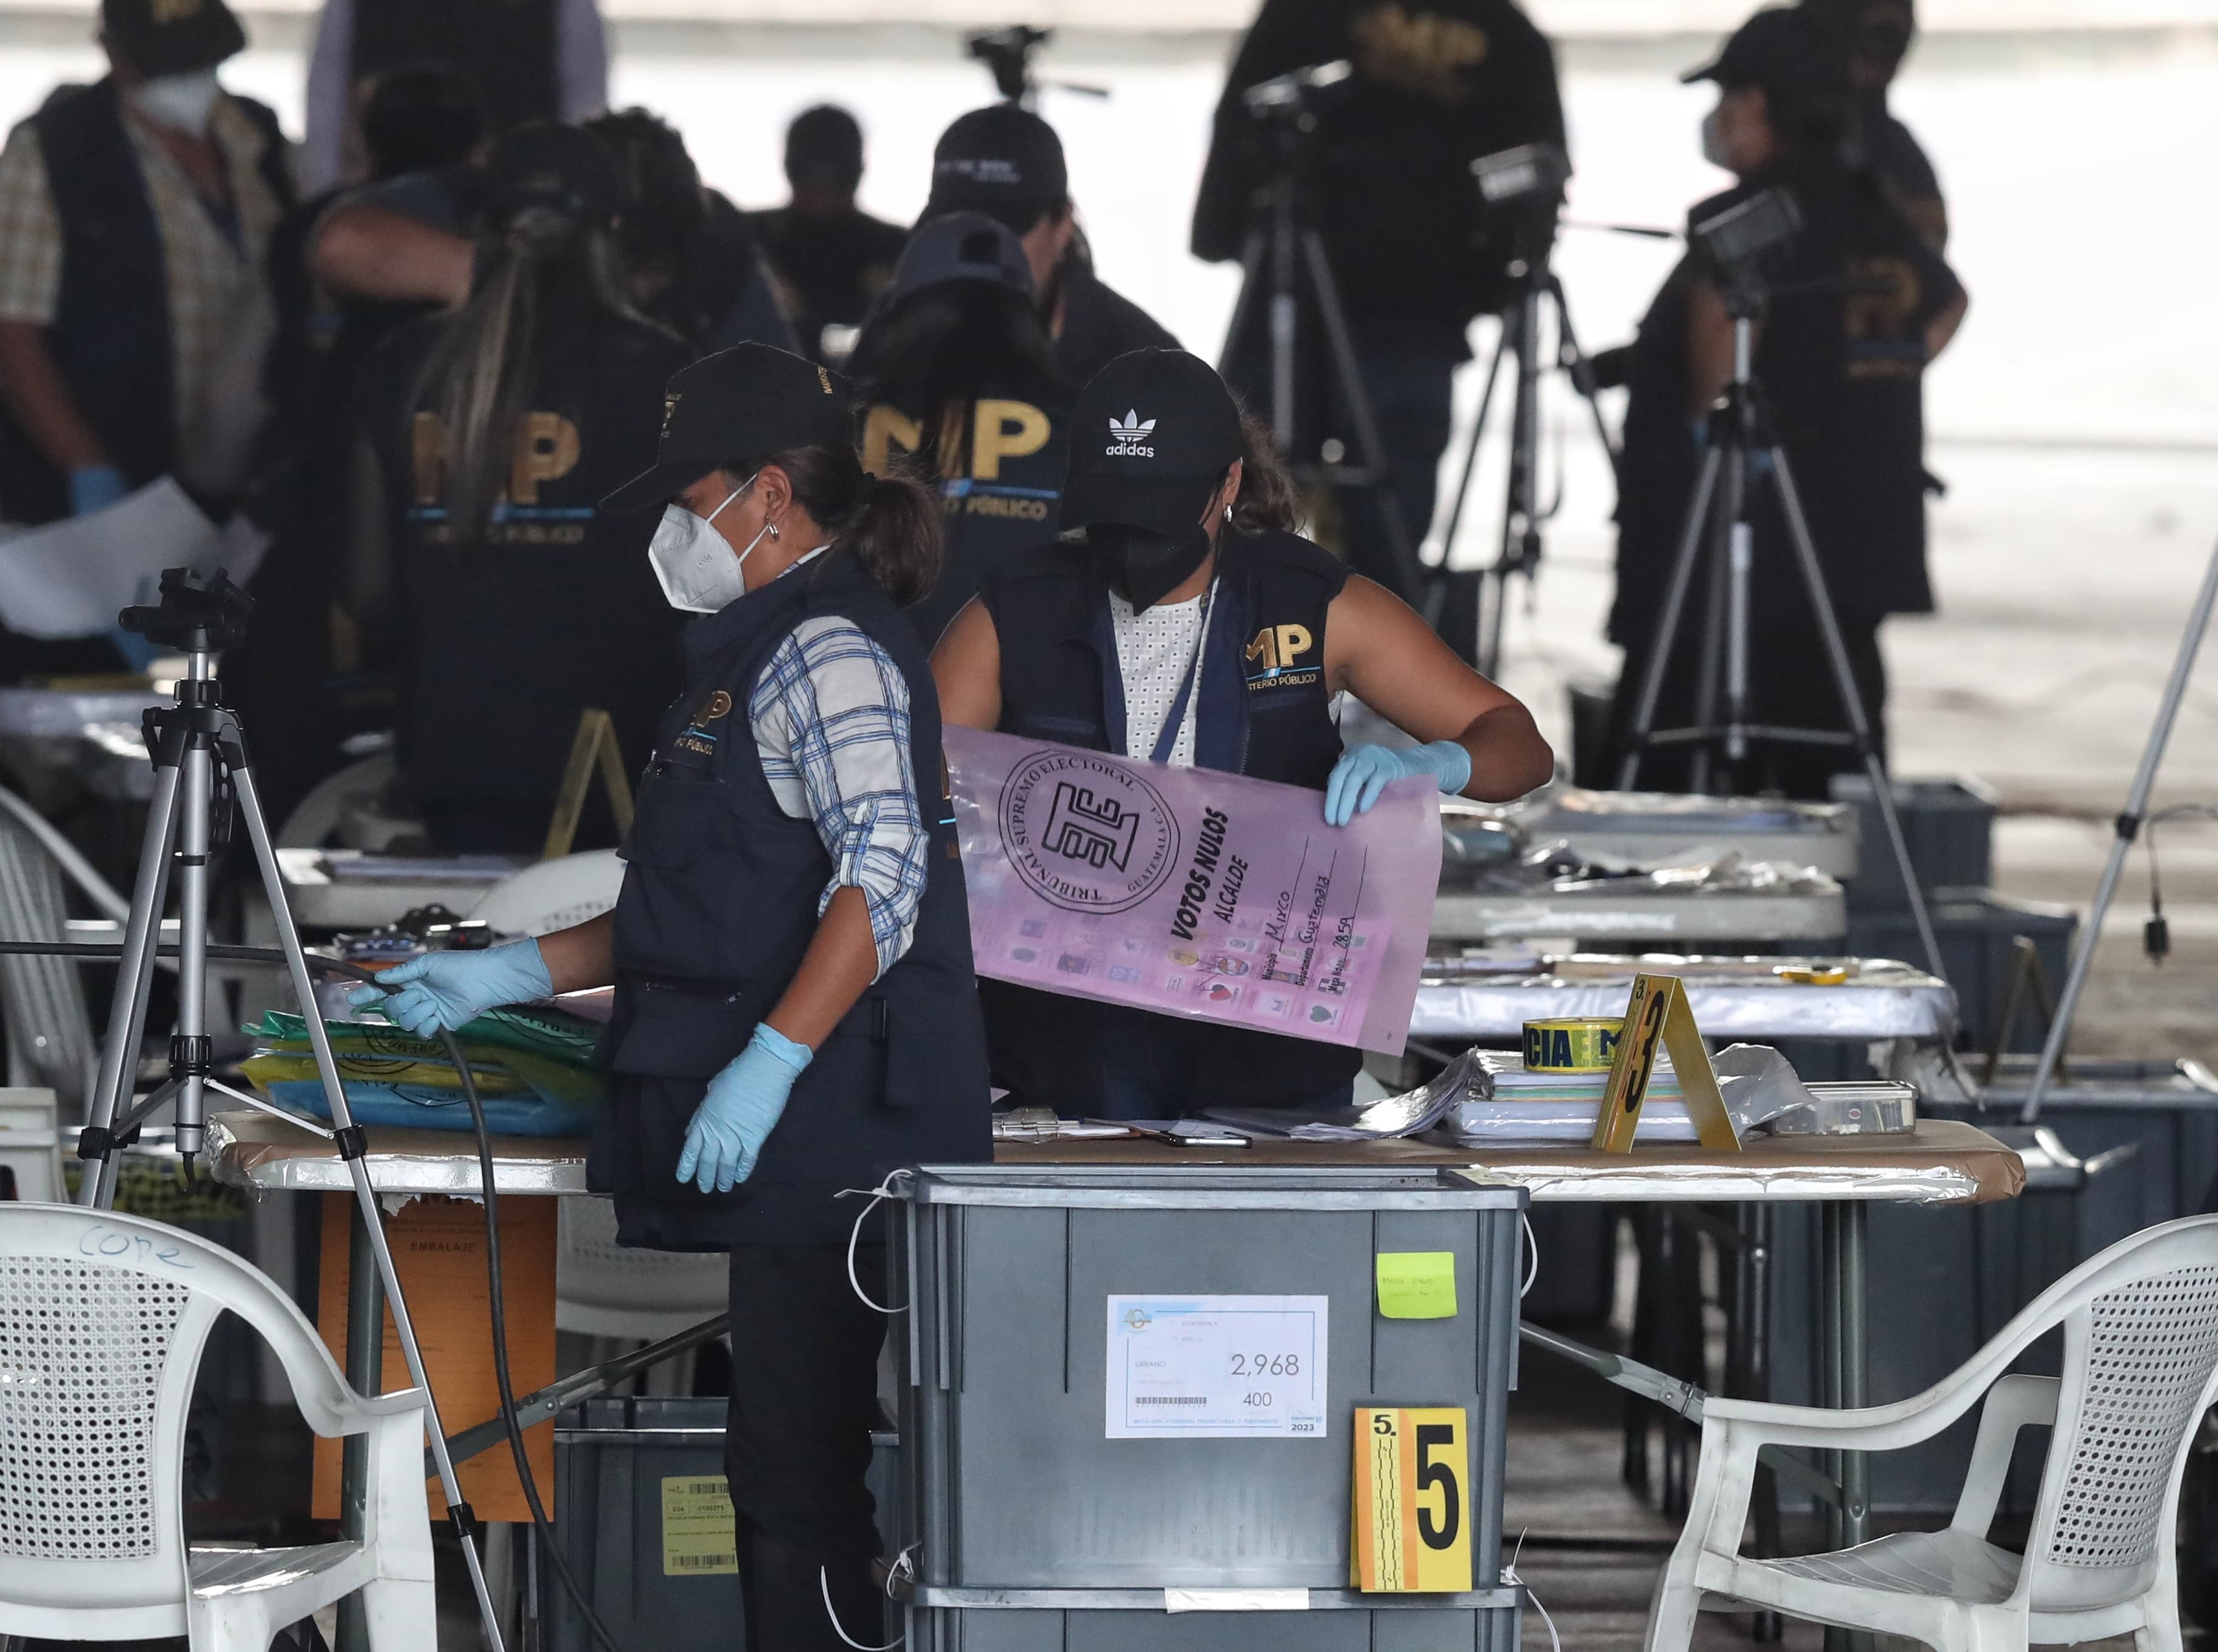 Los allanamientos del MP en sedes electorales son vistos por sectores sociales como un atentado en contra de la democracia, pues se vulneró la custodia del voto. (Foto Prensa Libre: Esbin García)